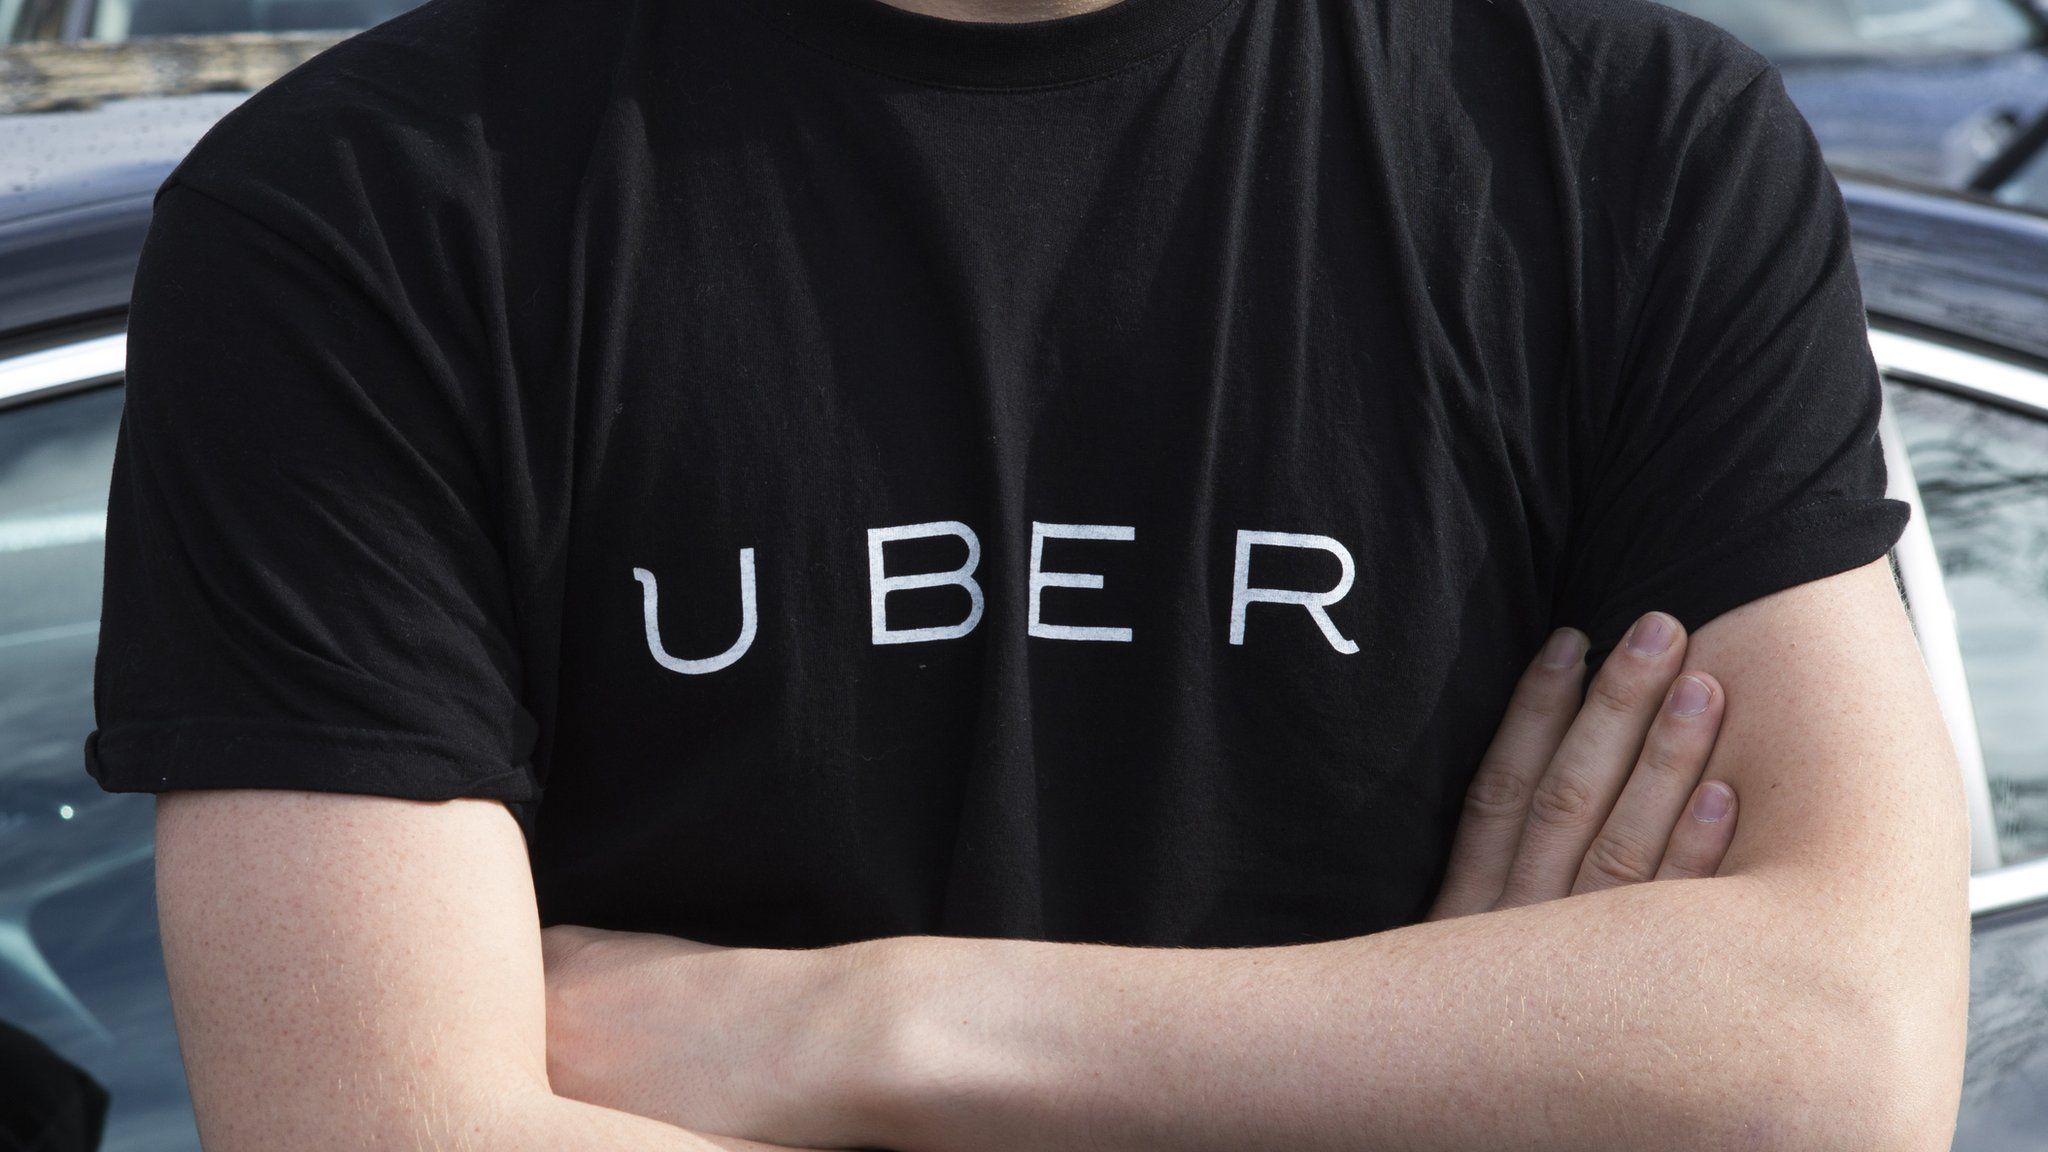 Uber logo written on t-shirt